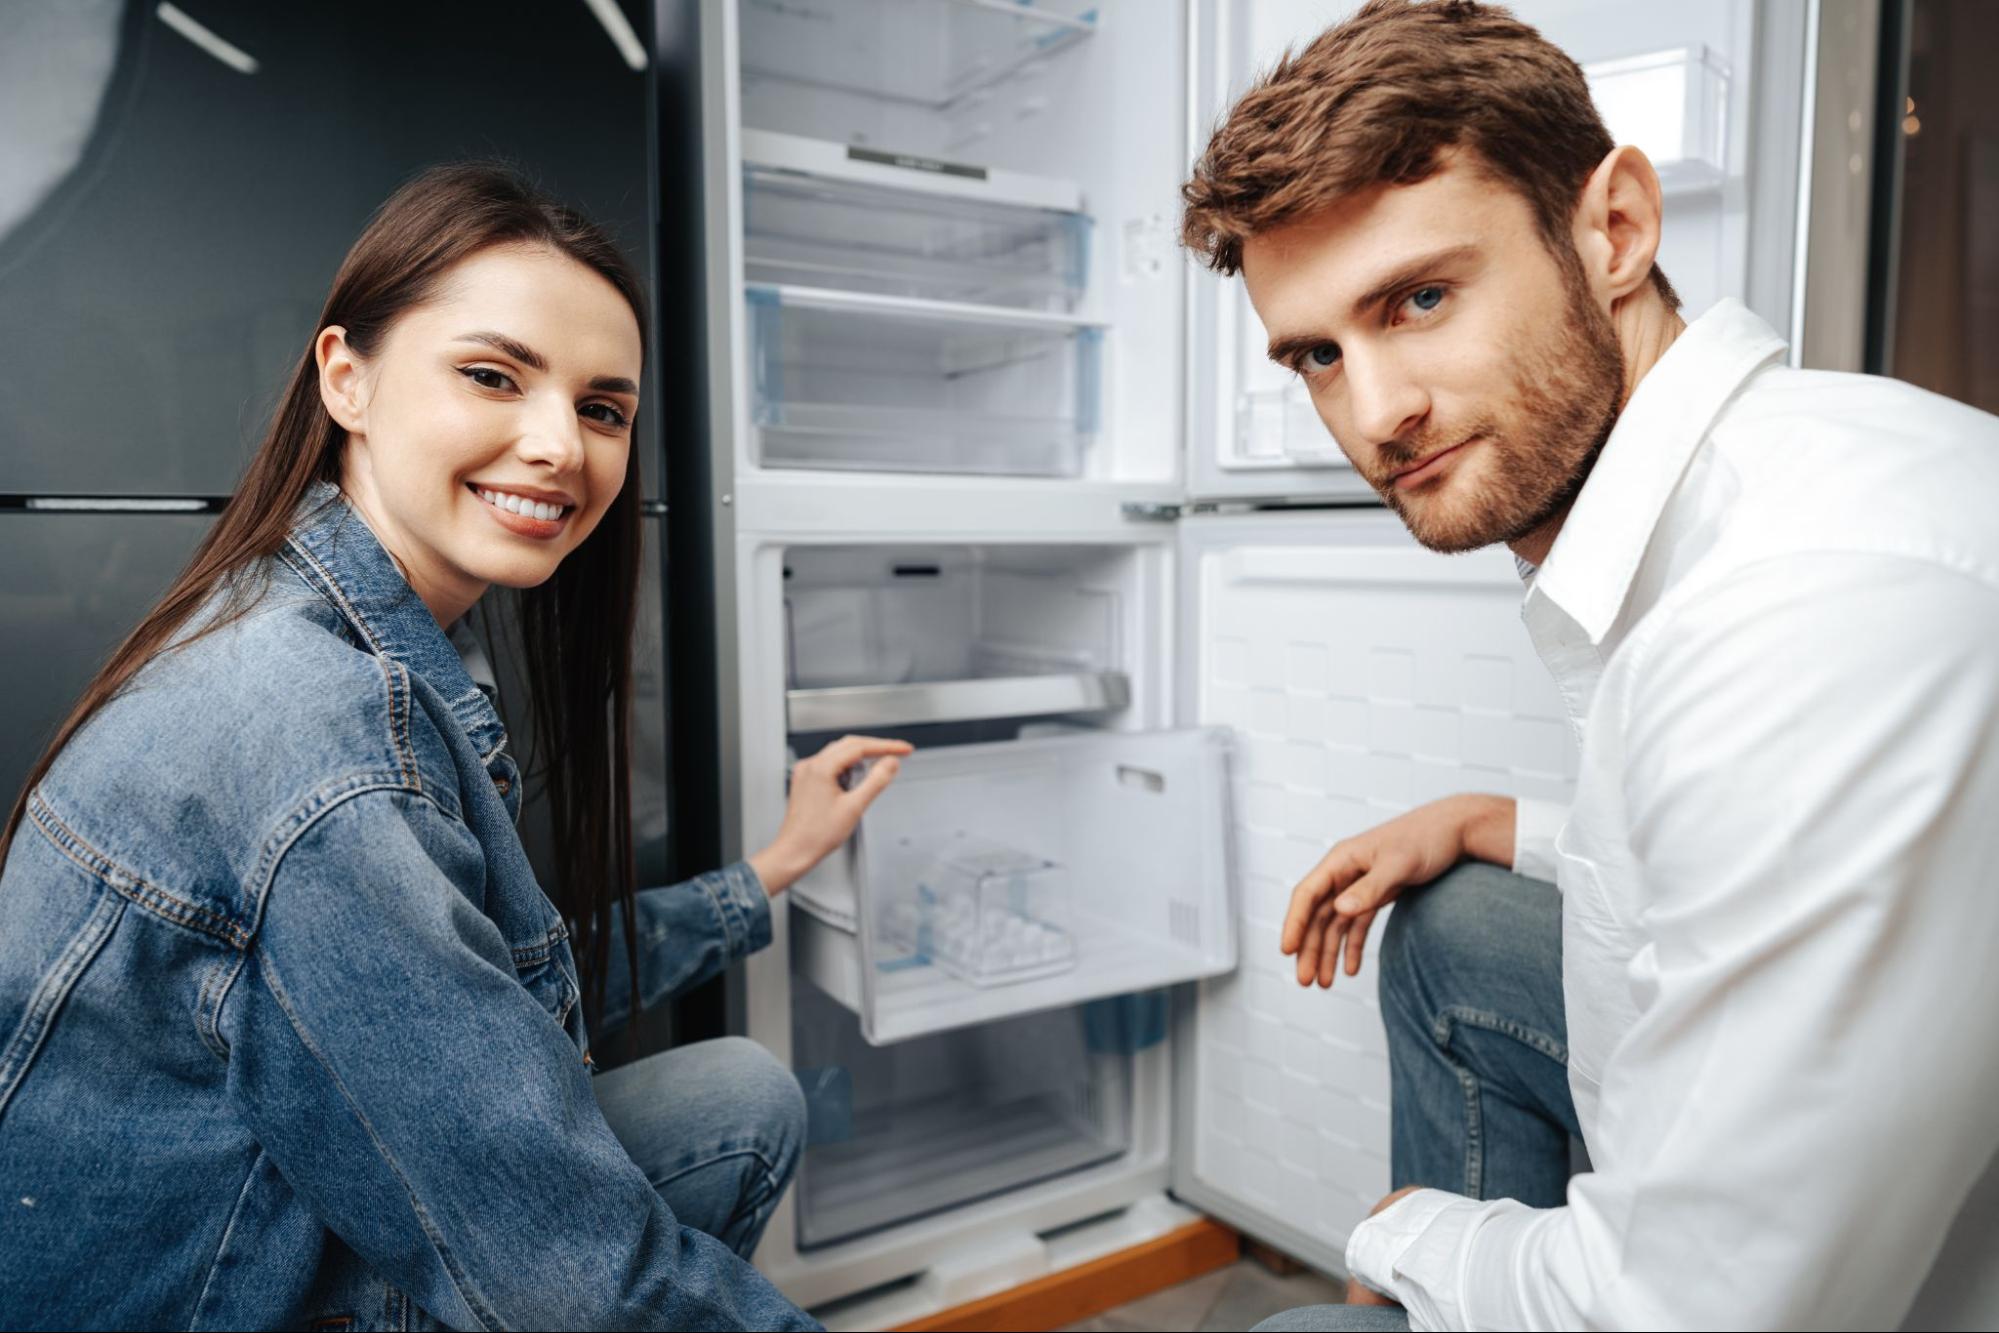 วางตู้เย็นตรงไหนดีให้ปลอดภัยใช้งานง่ายพร้อมถูกหลักฮวงจุ้ย